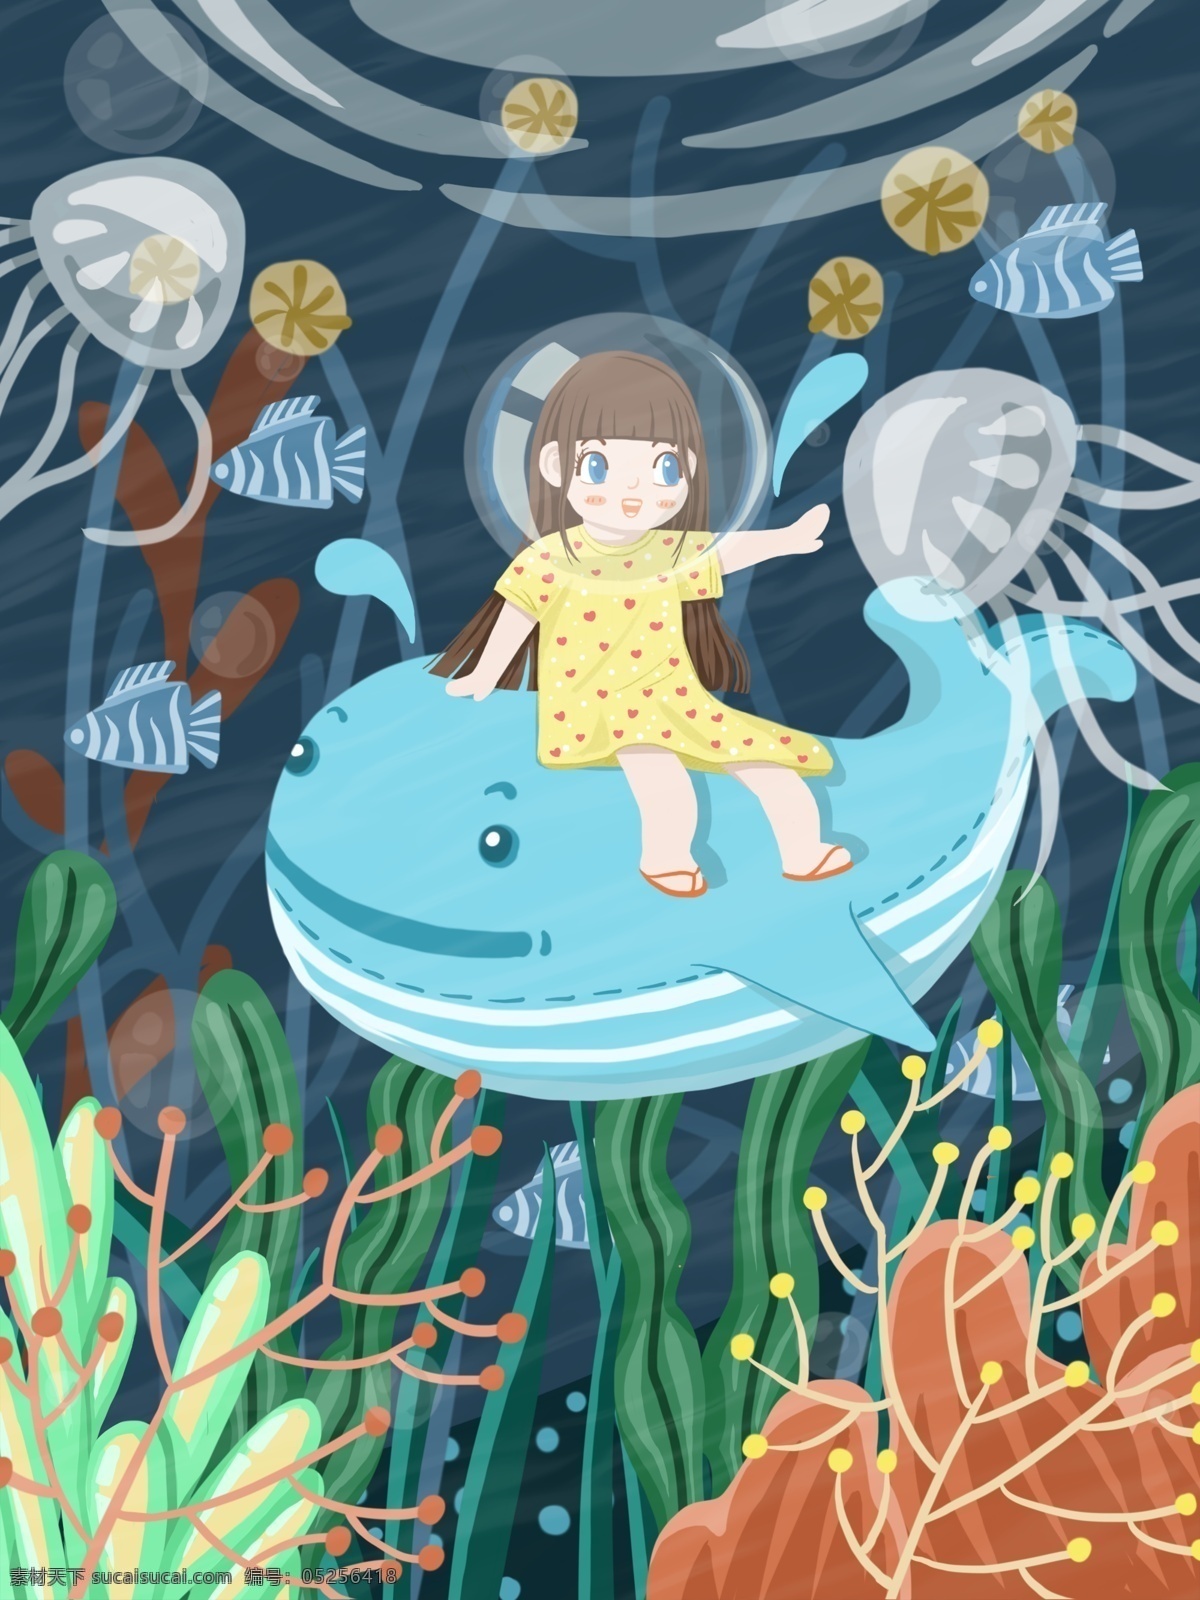 世界 海洋 日 主题 插画 鲸鱼 可爱 女孩 海底 遨游 世界海洋日 海底世界 水母 海草